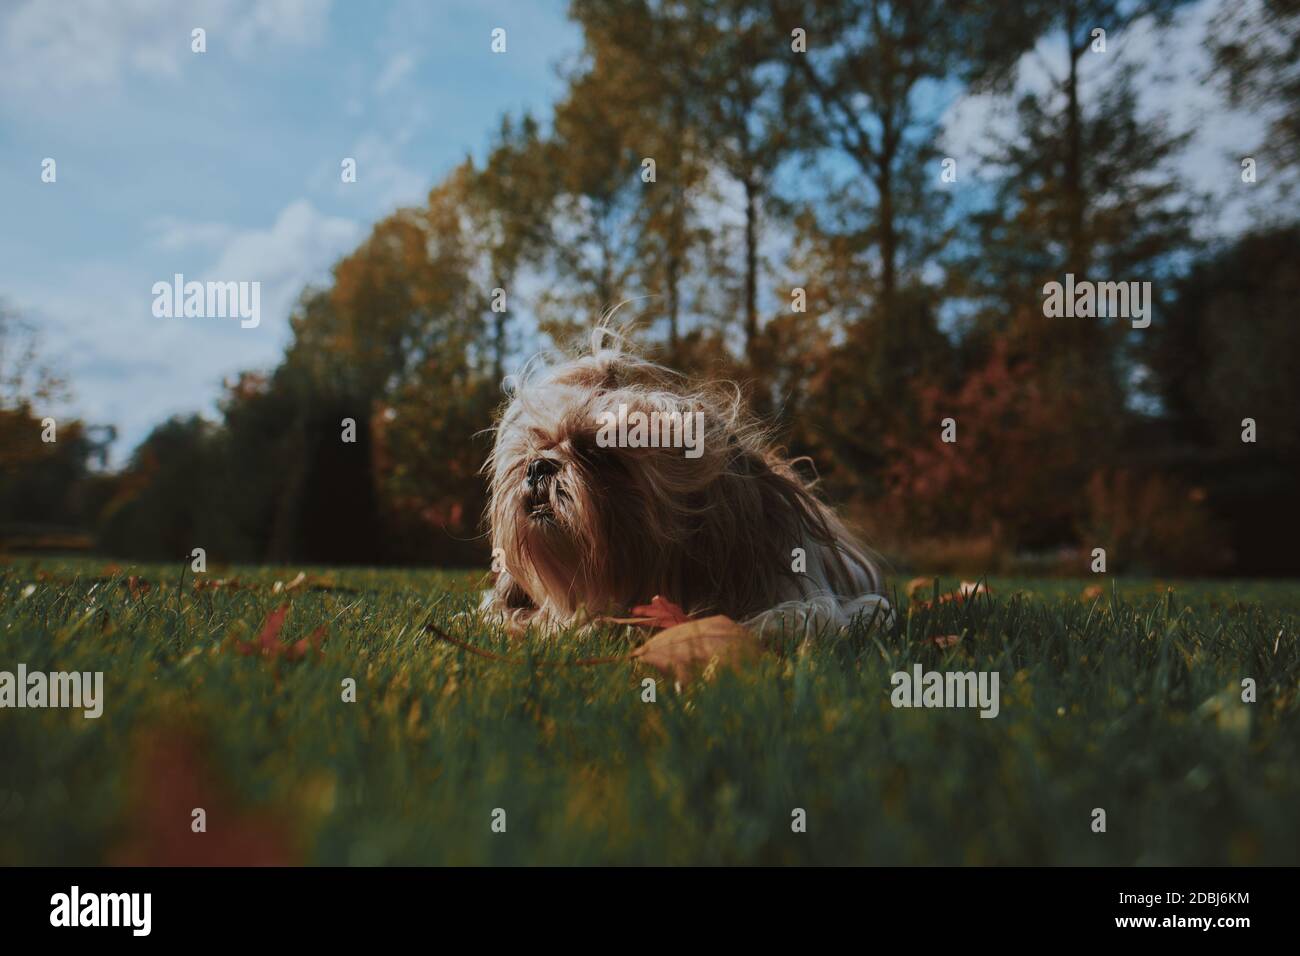 Kleiner Shih Tzu Hund legt sich in grünen Park Gras, Garten, Natur umgeben von hohen Bäumen, orange Blätter und blauen Himmel im Herbst, Herbst. Stockfoto